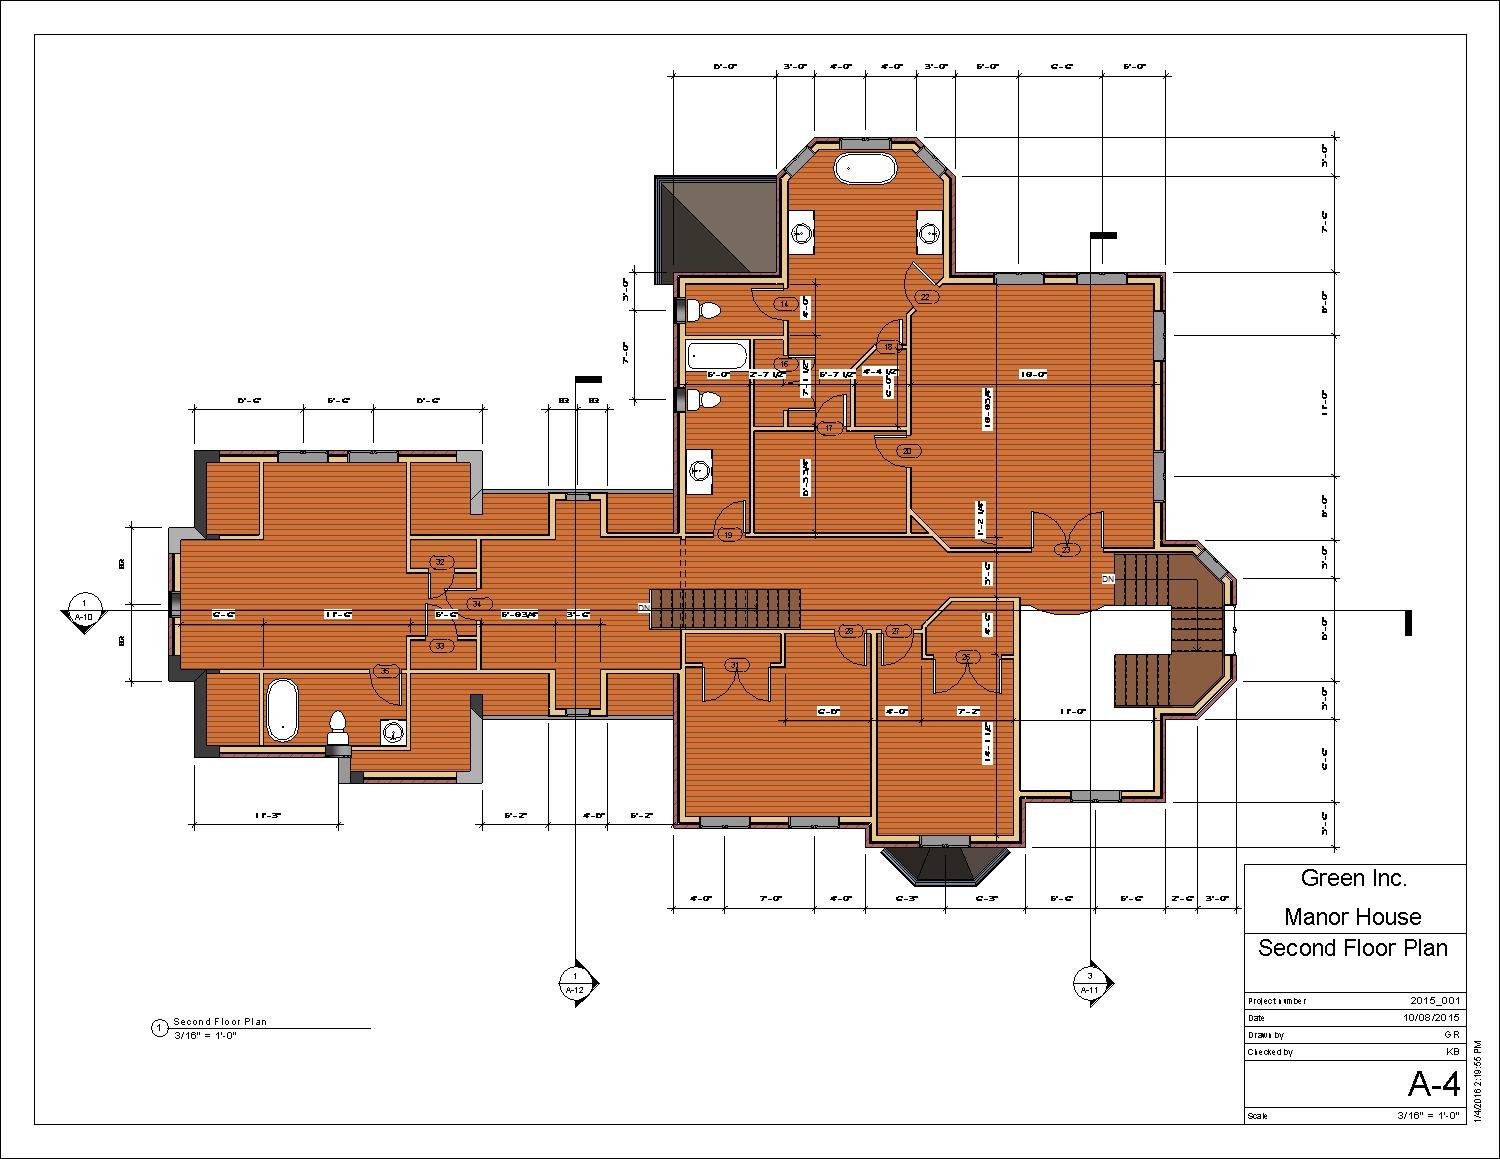 Manor House_GR - Sheet - A-4 - Second Floor Plan.jpg